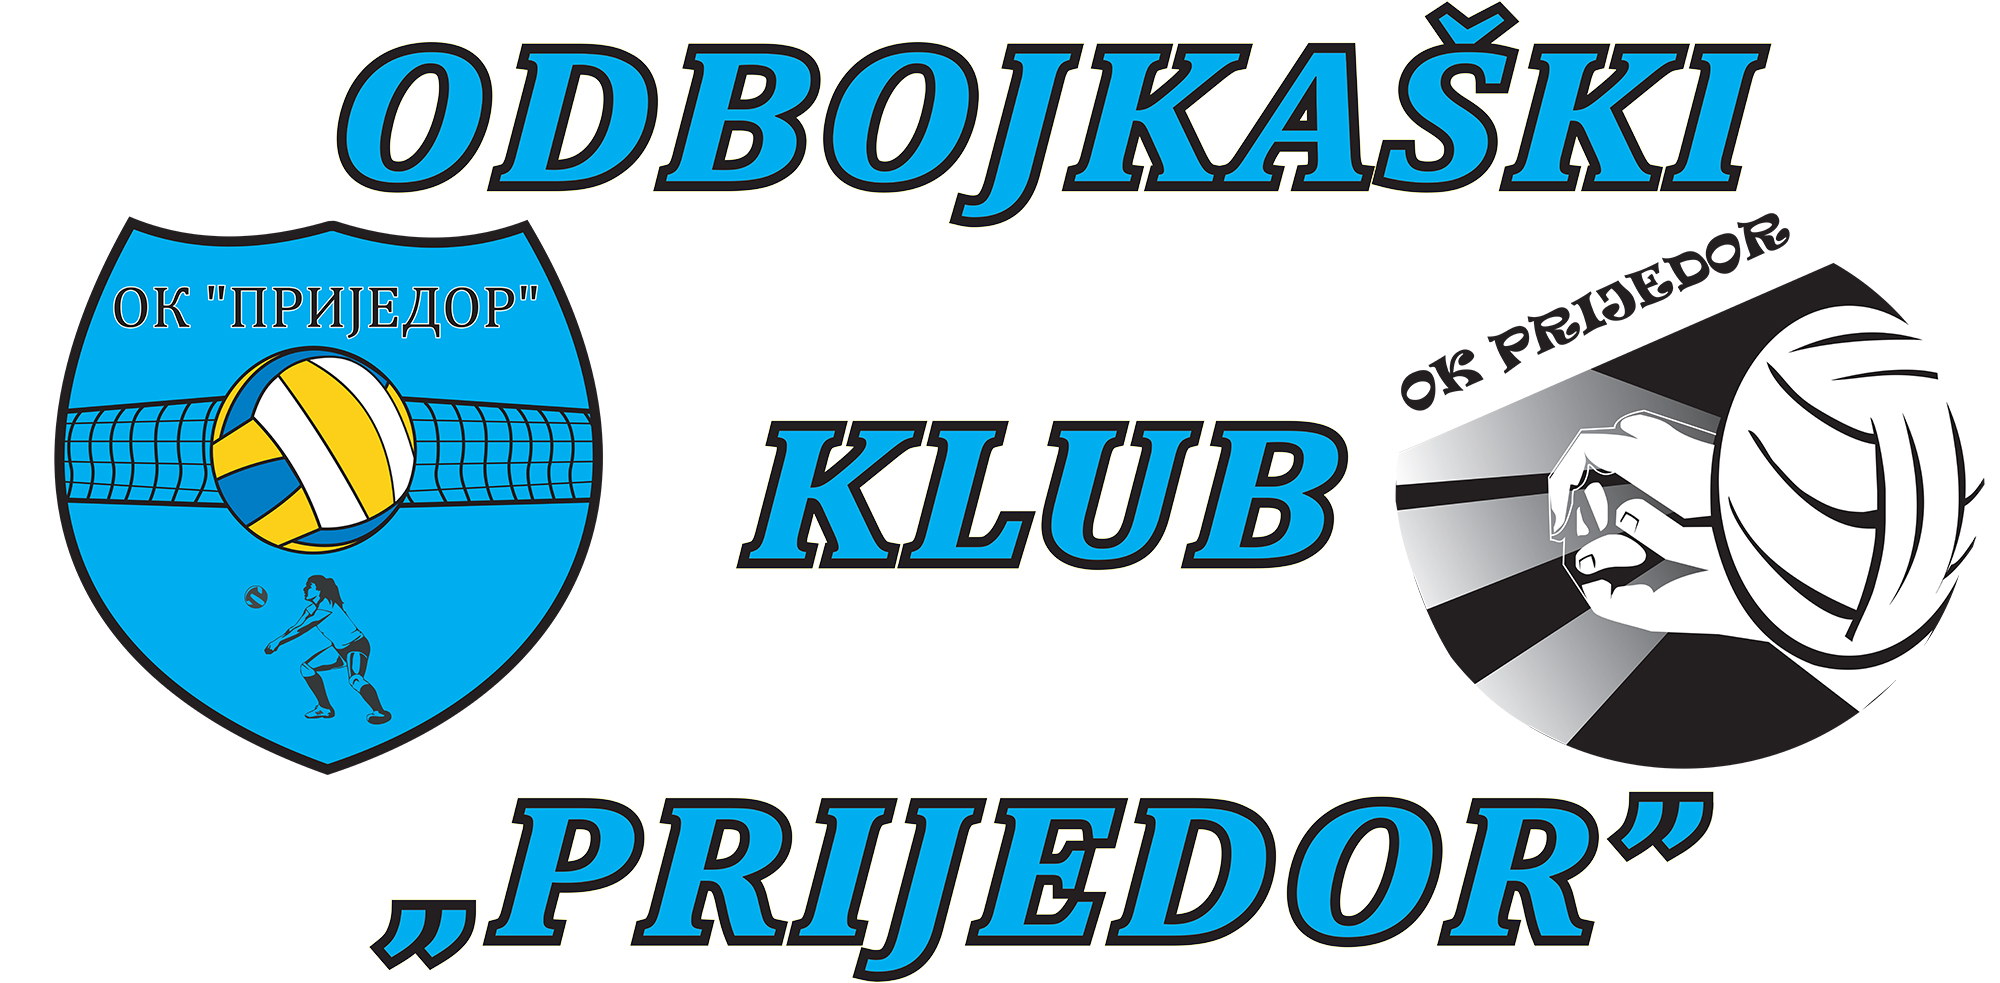 OK Prijedor logo+